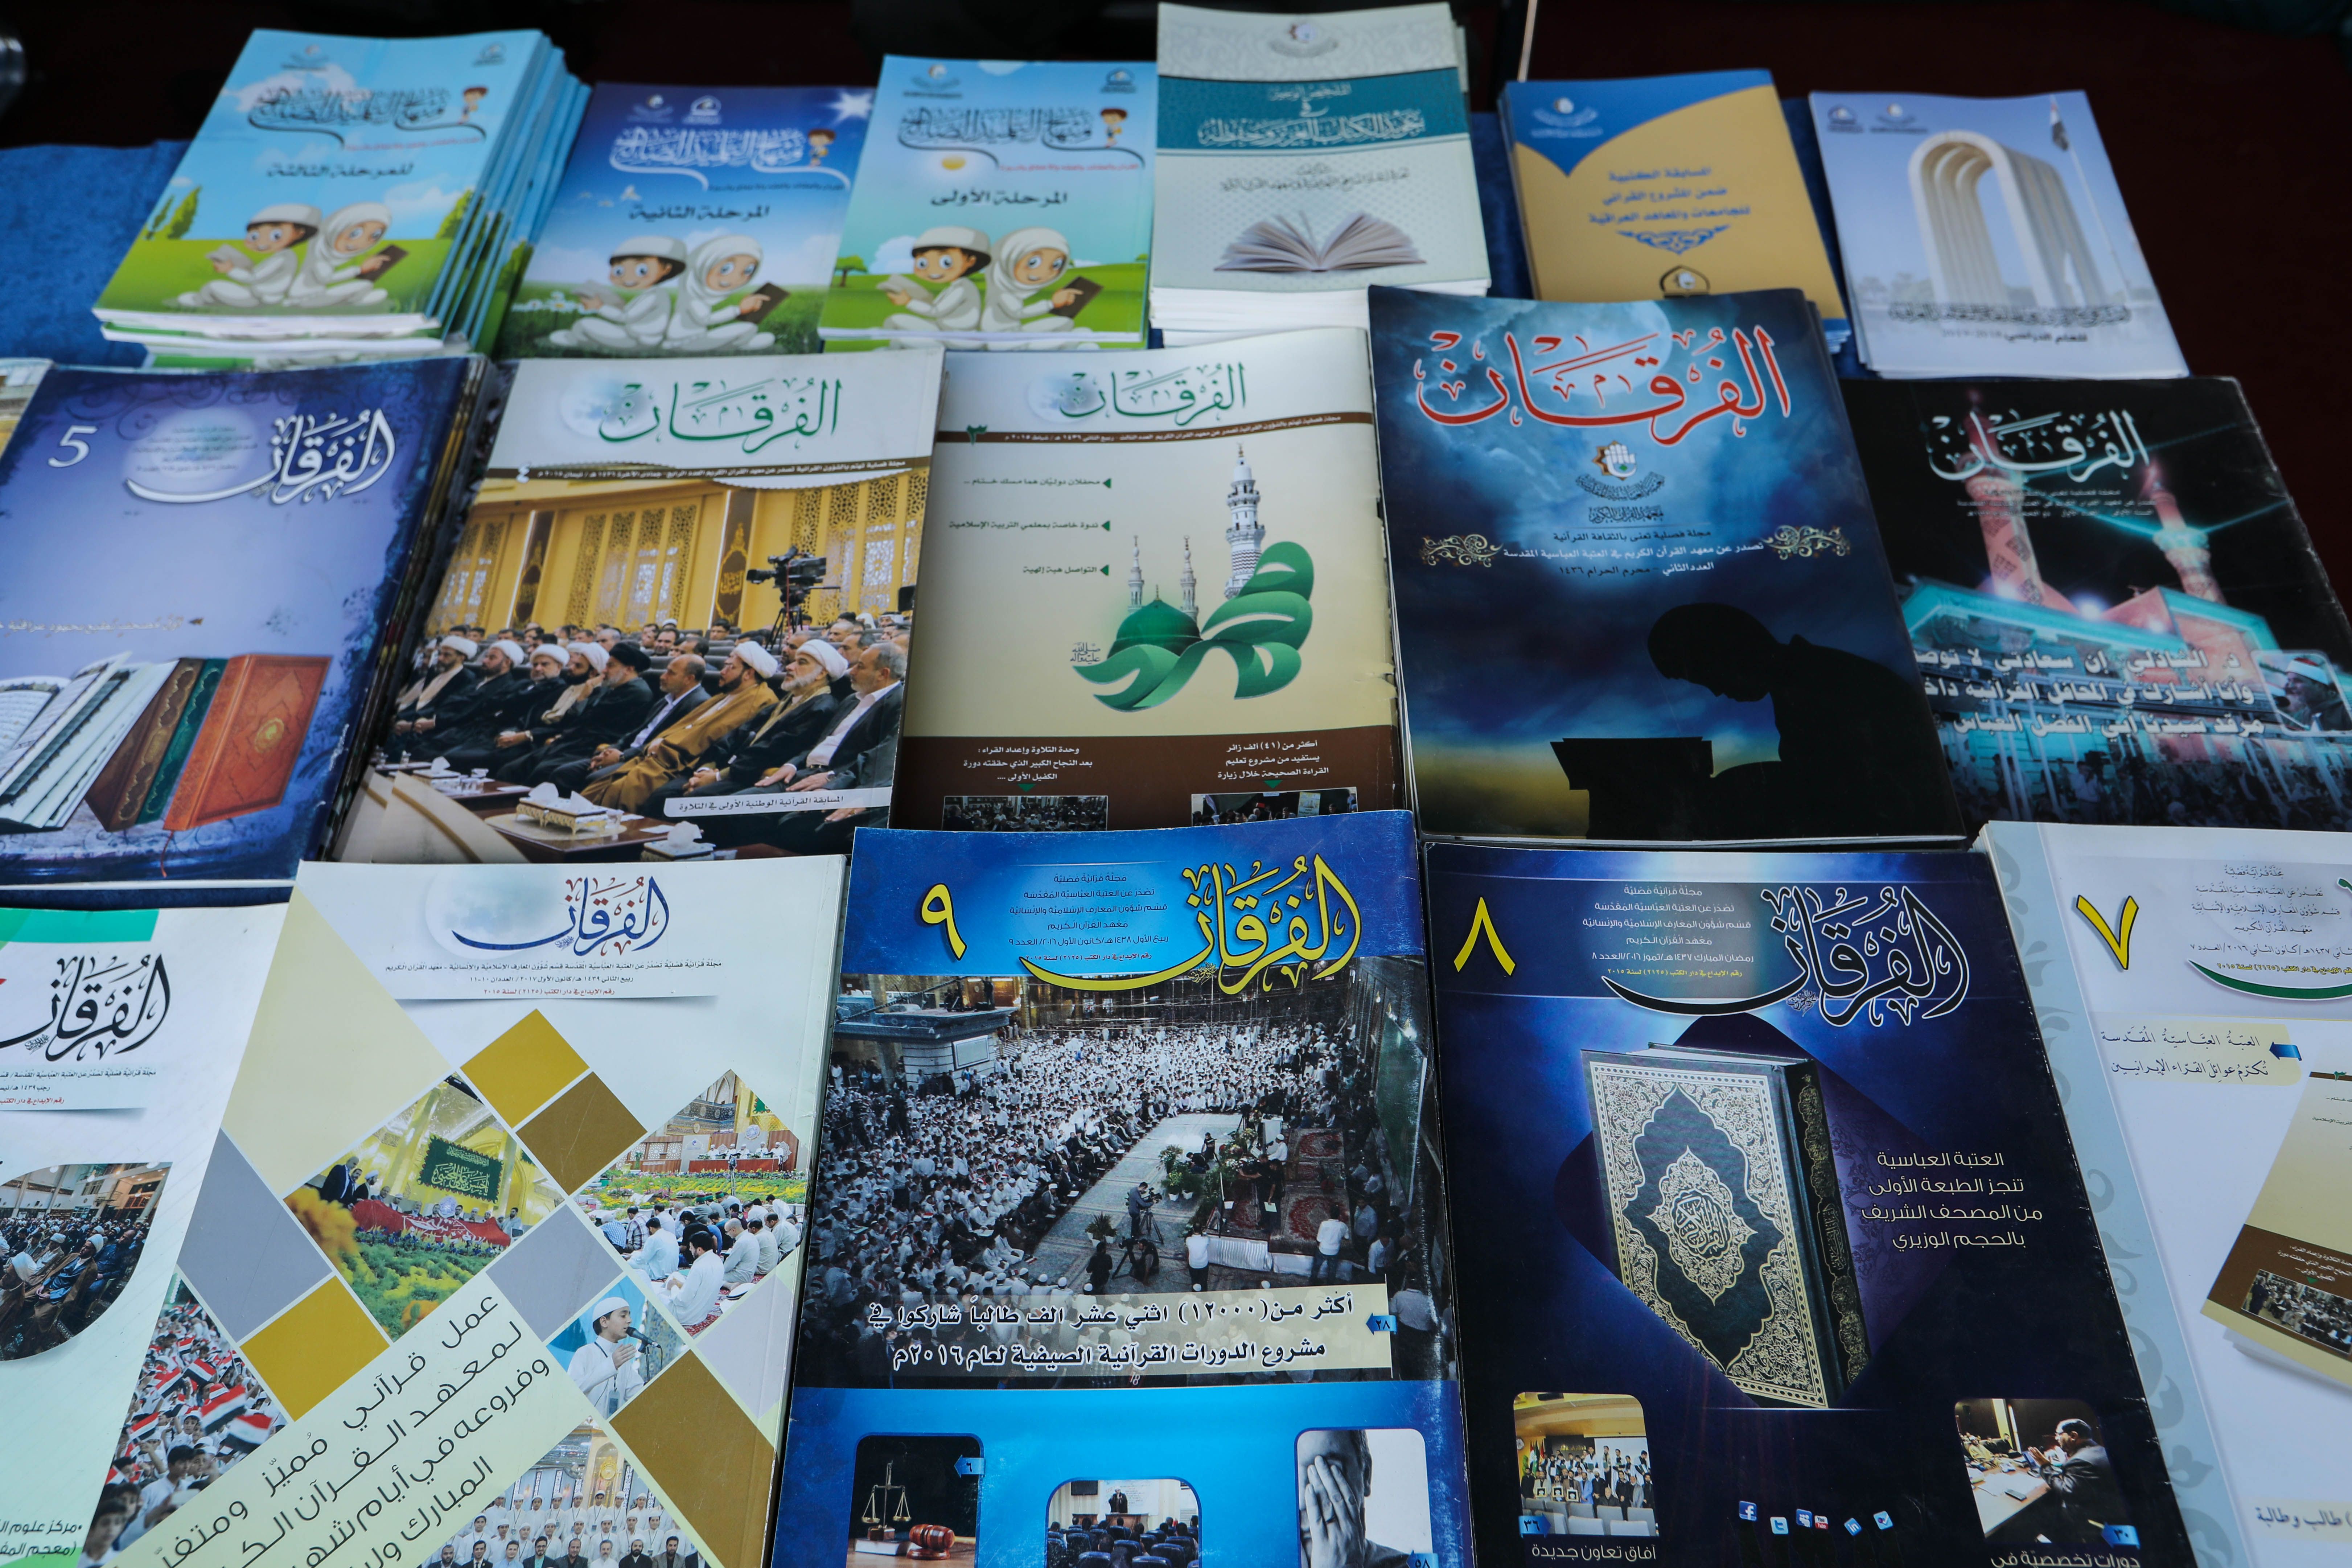 المجمع العلمي للقرآن الكريم يشارك بمعرض جامعة العميد ويستعرض مشاريعه القرآنية